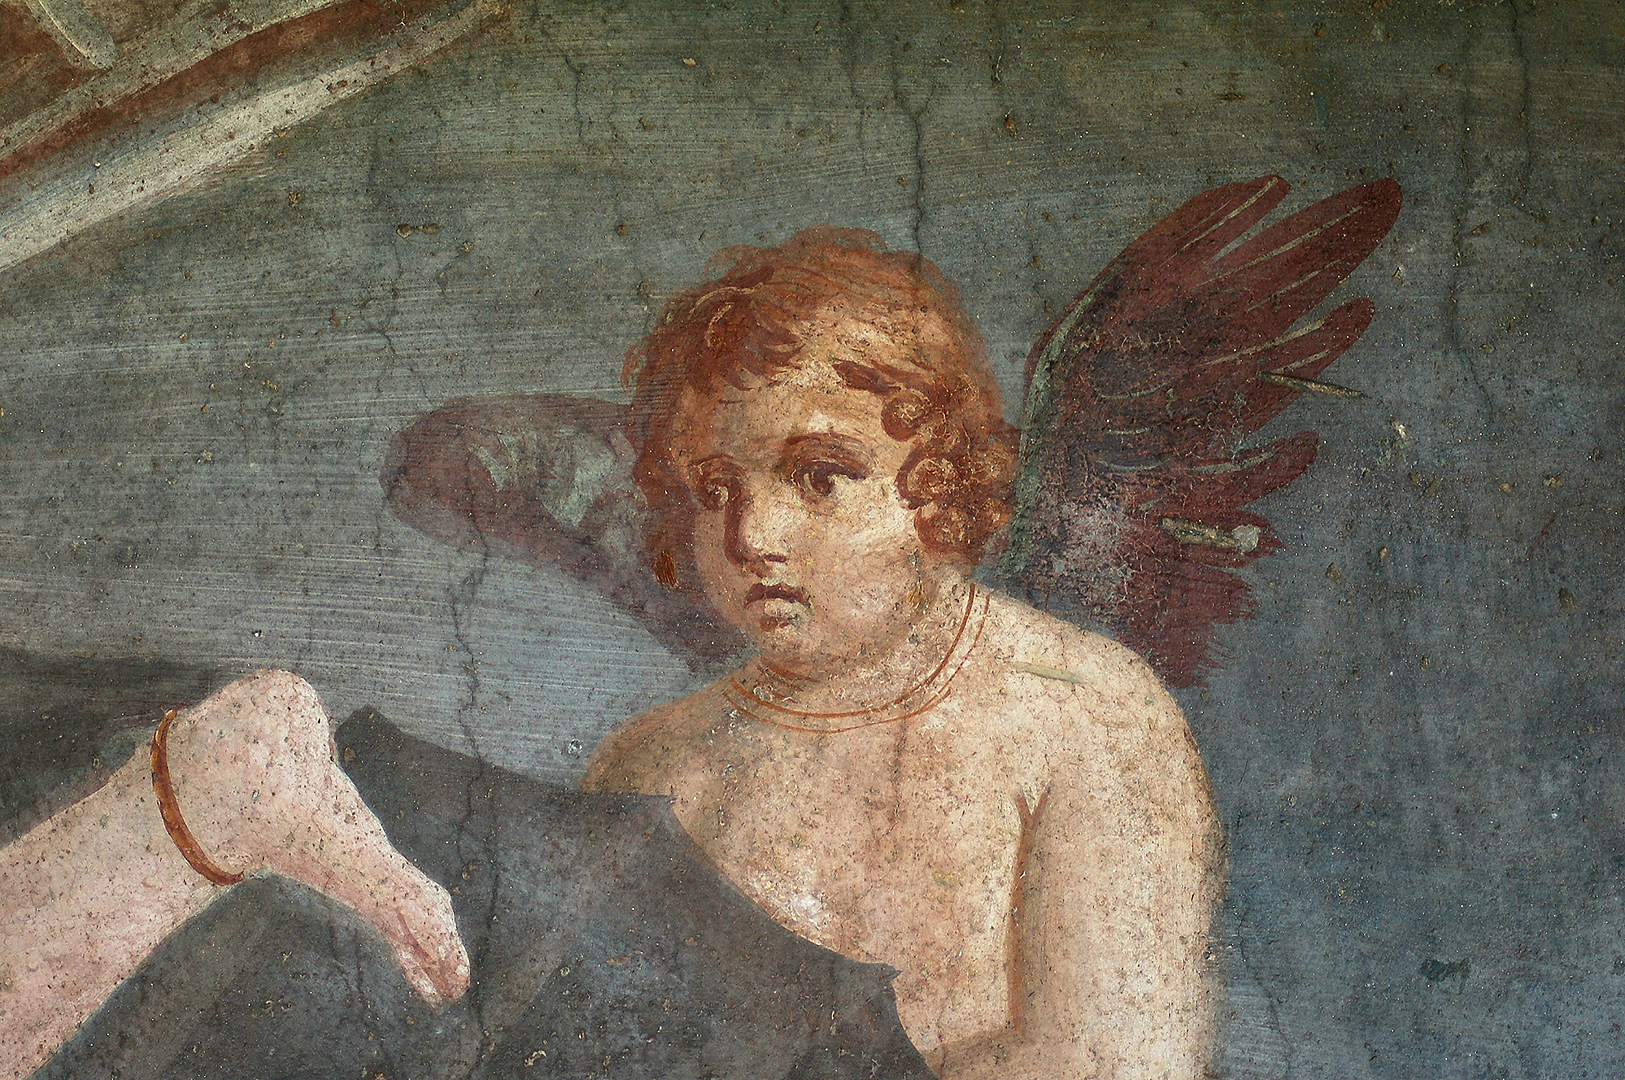 Huis van Venus, Pompeii, Campanië, Italië; House of Venus, Pompeii, Campania, Italy